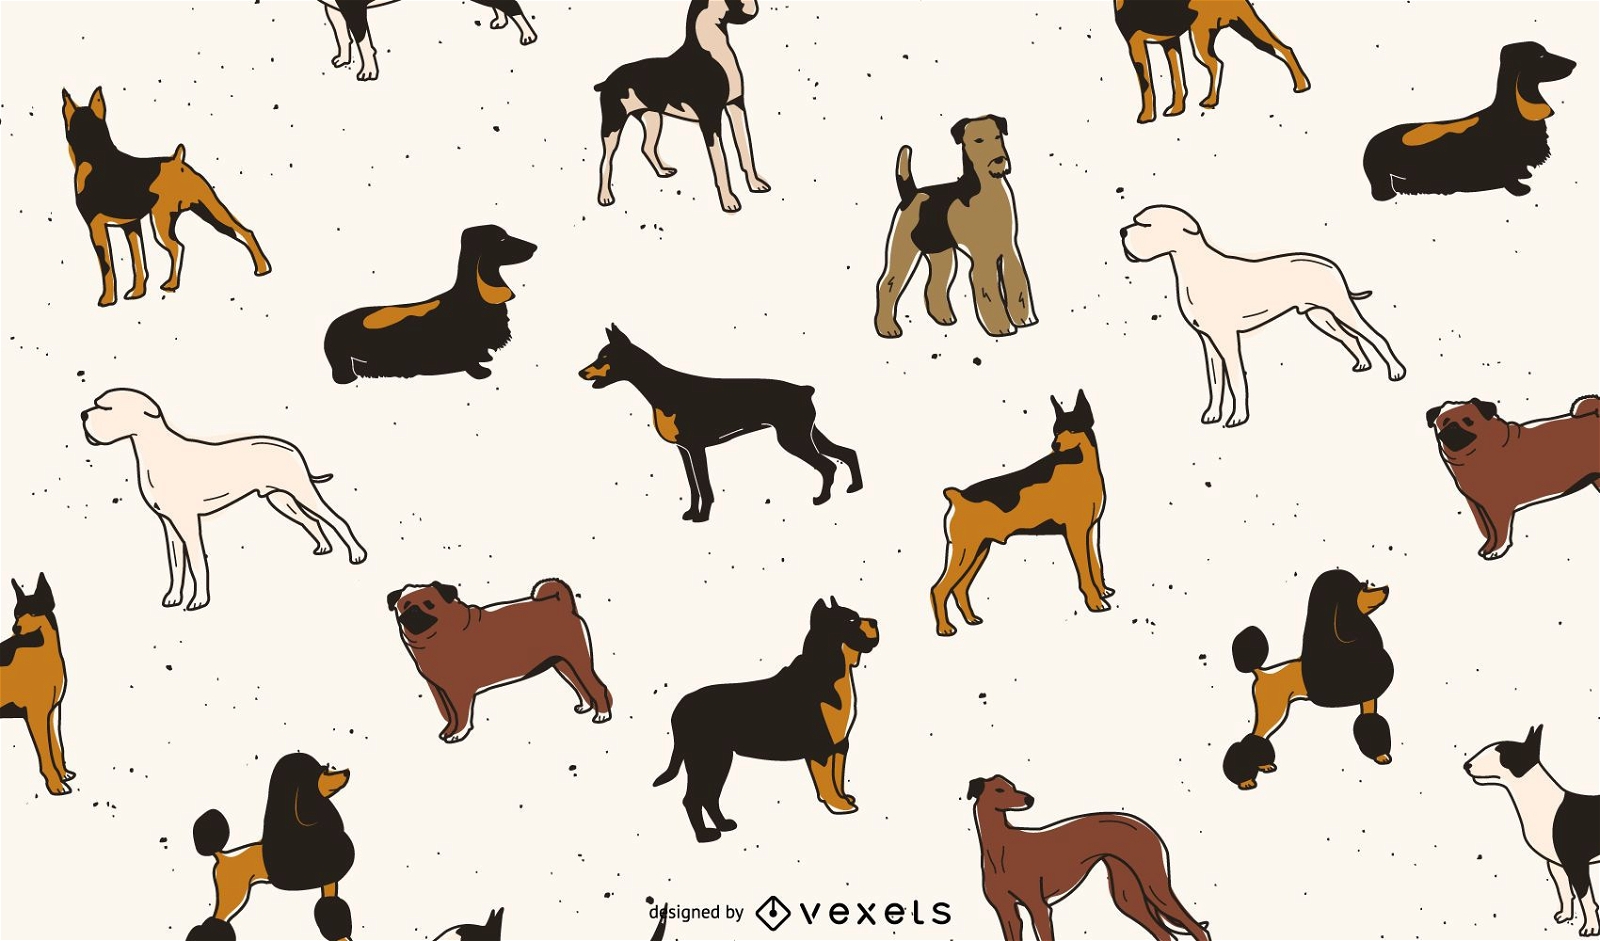 Dog breeds pattern design